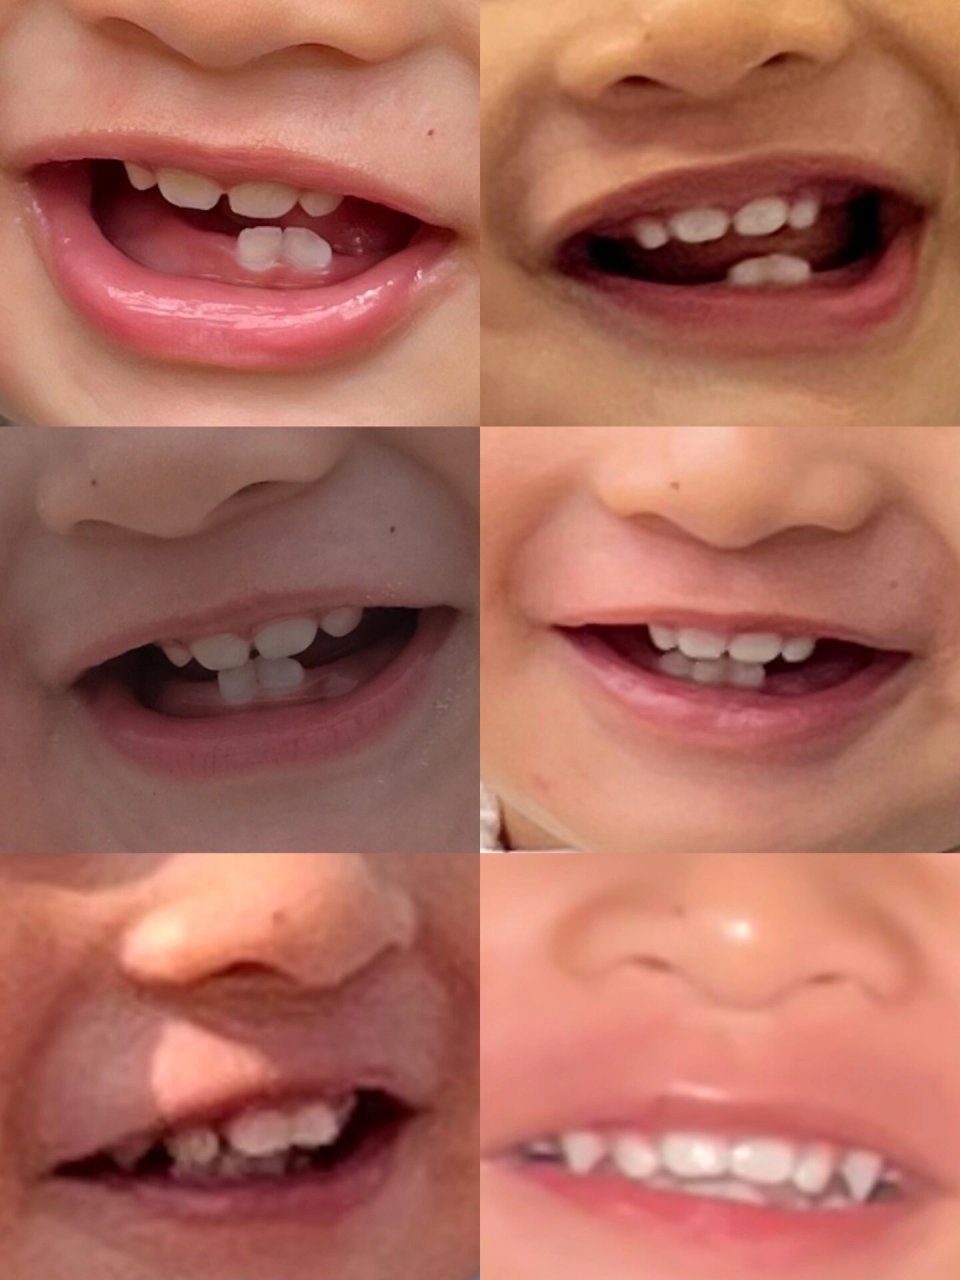 小孩吸奶嘴牙齿变形图图片